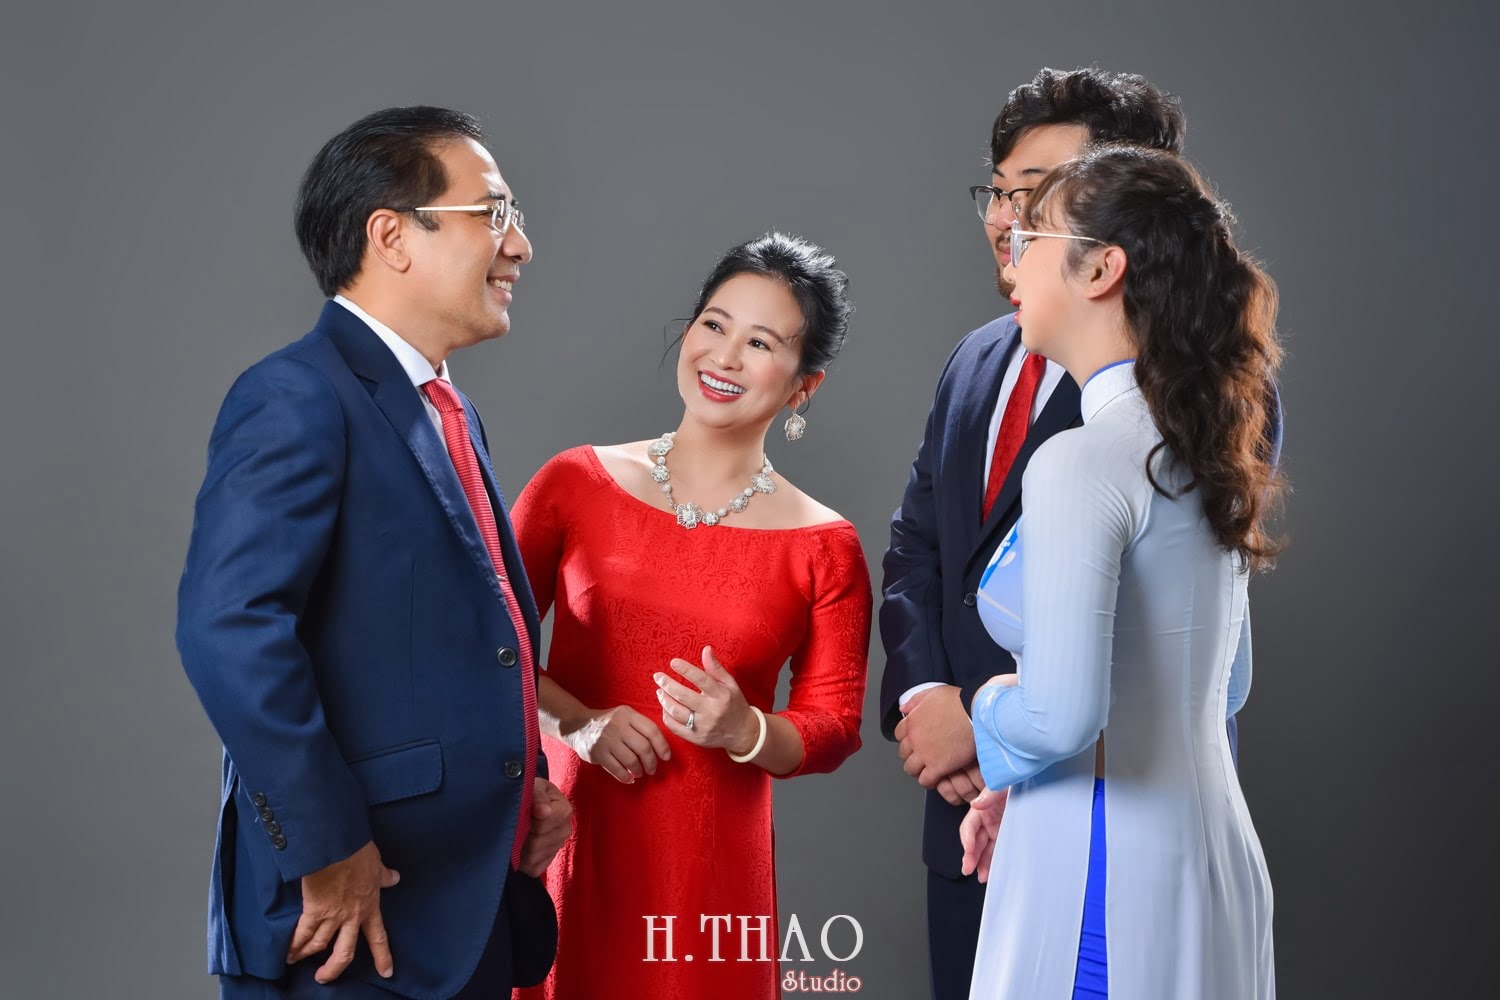 Anh gia dinh 4 nguoi 10 min - Bỏ túi 3 bí quyết chụp ảnh gia đình đẹp - HThao Studio